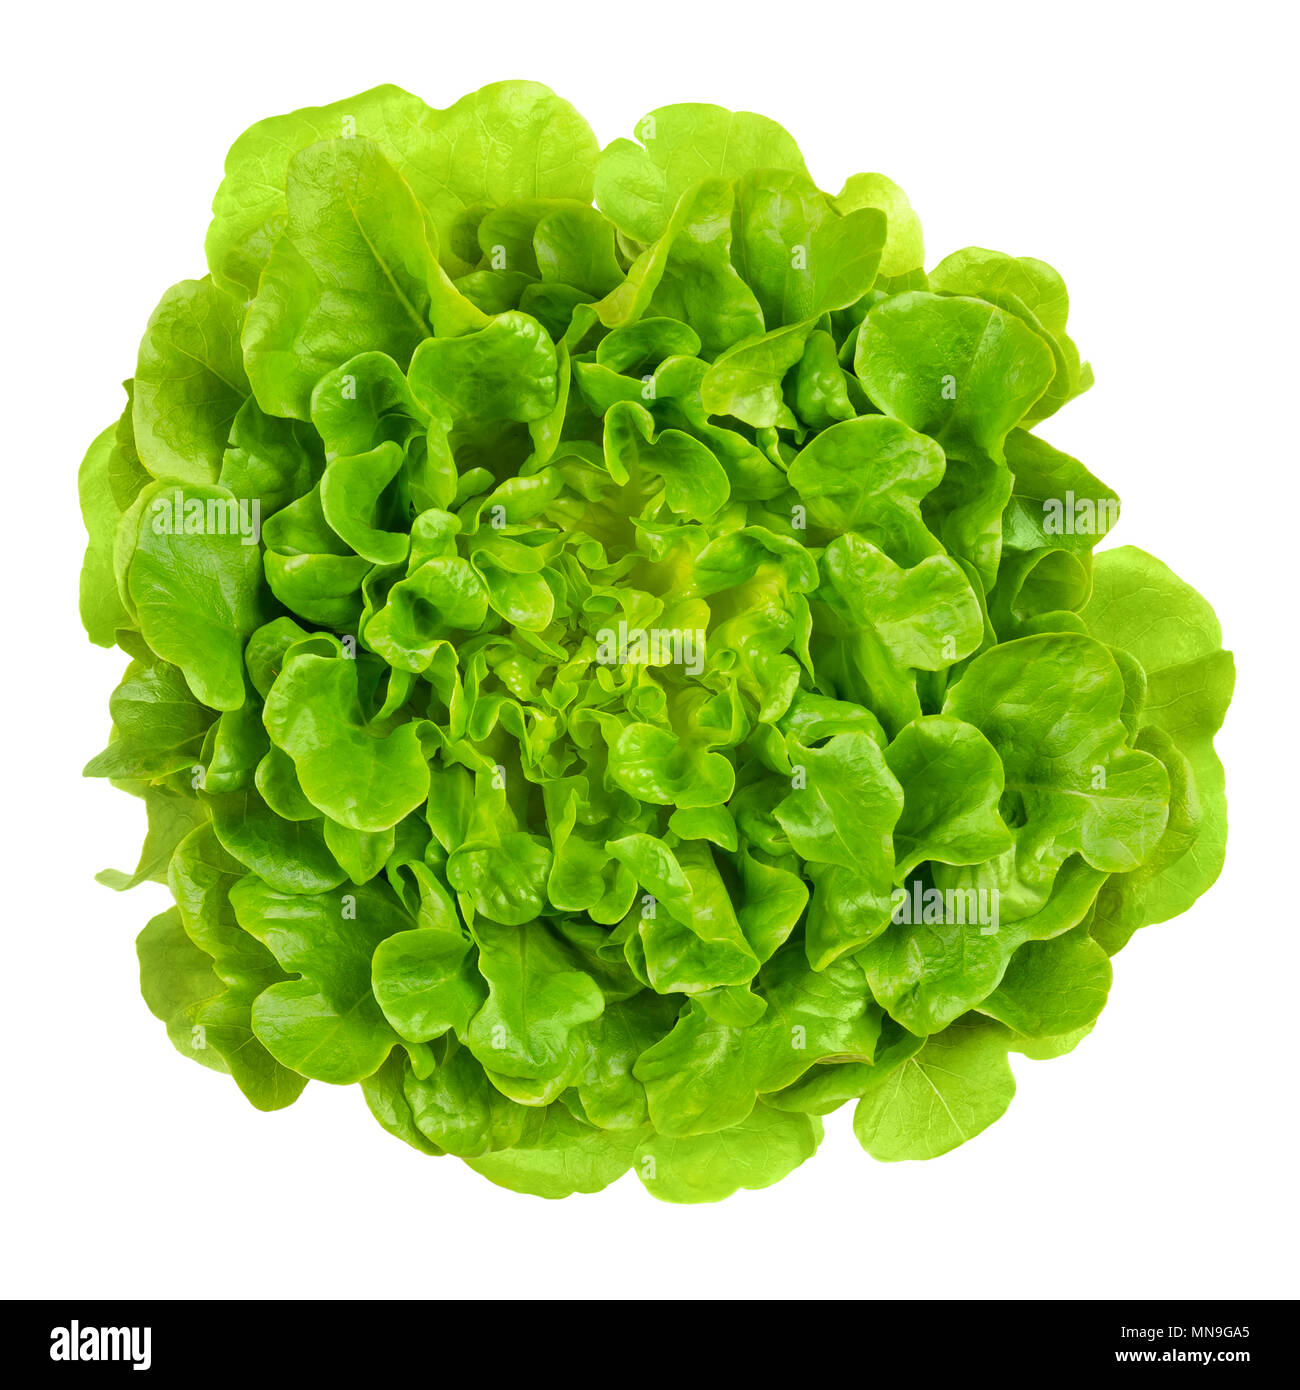 Grüne Eiche Salanova Salat von oben. Einem Schnitt bereit, lose Blatt Salat, linear, Gelappt und Lose gezahnt. Ein Lactuca Sativa Sorte. Stockfoto